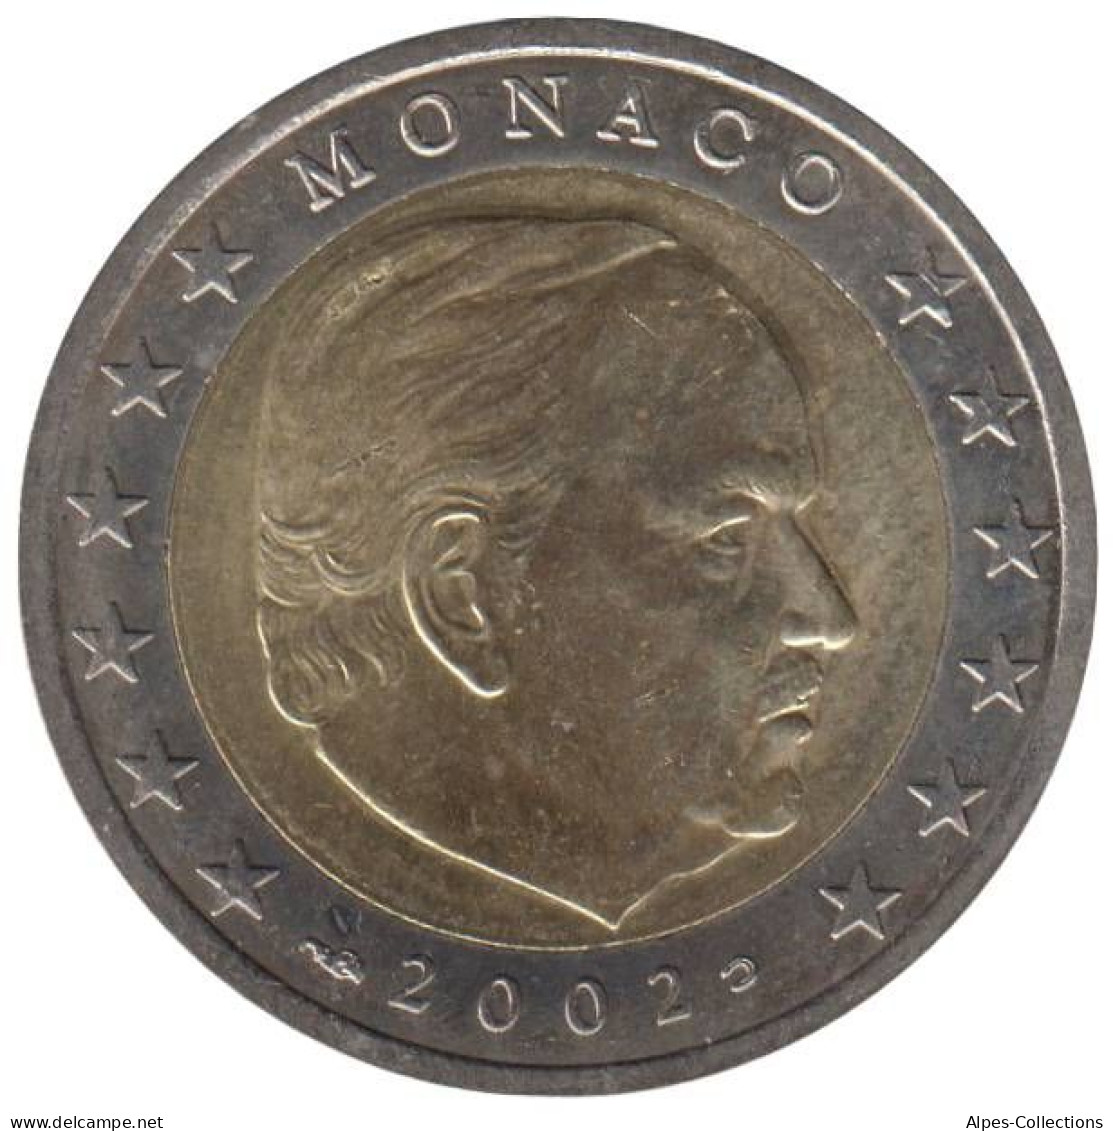 MO20002.1 - MONACO - 2 Euros - 2002 - Monaco